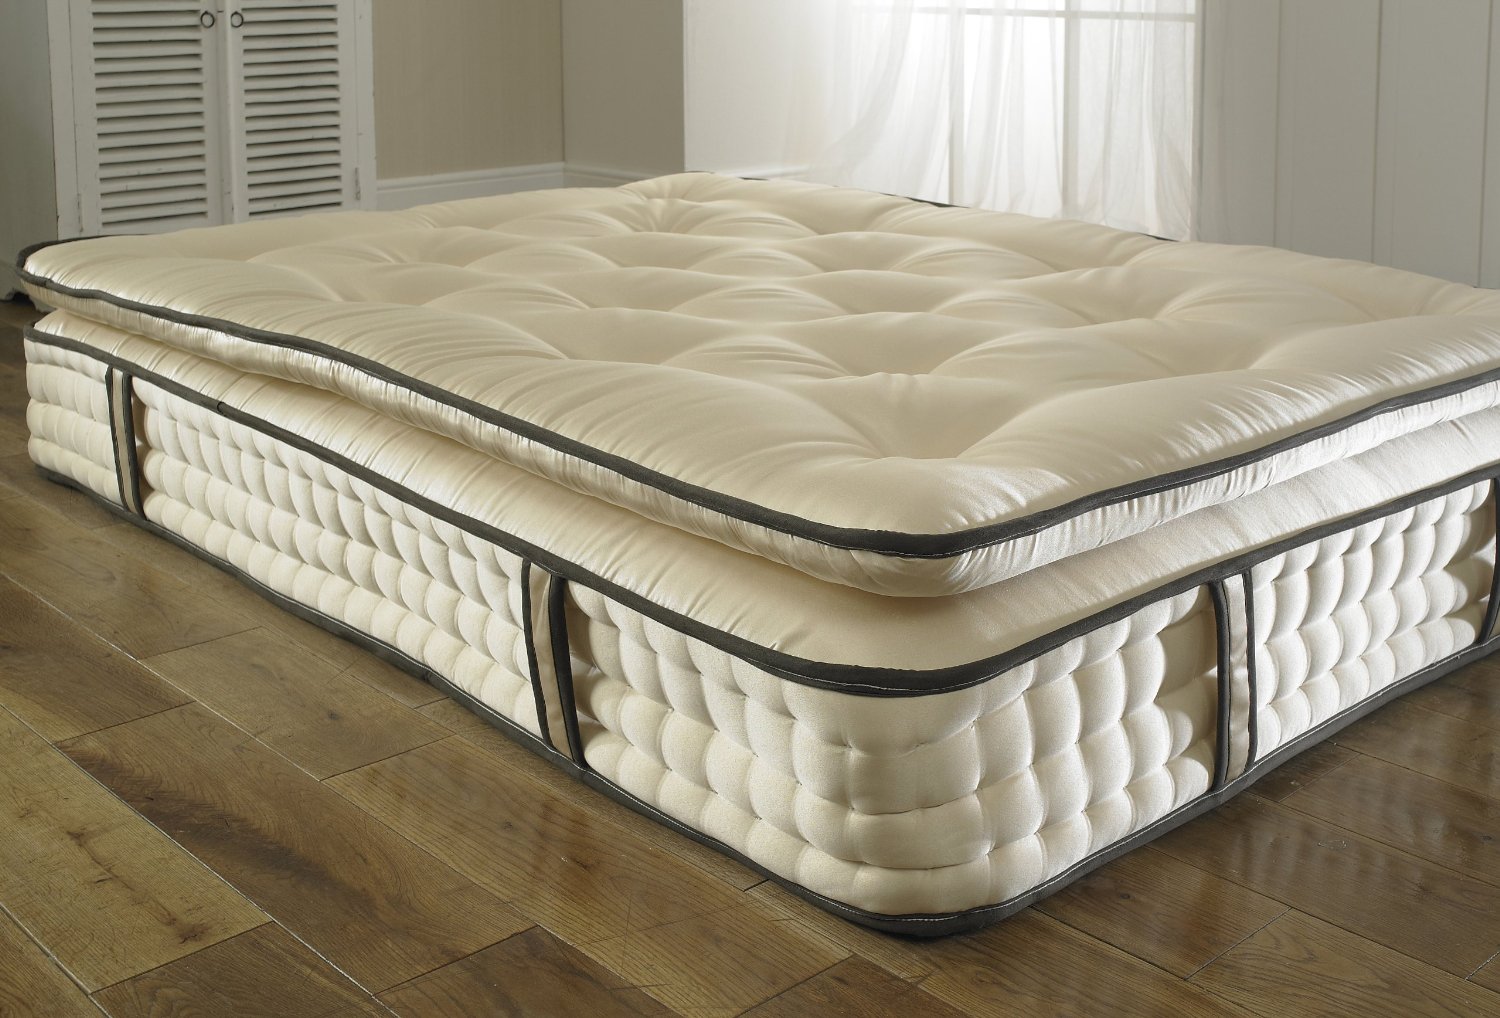 beds co uk mattress reviews